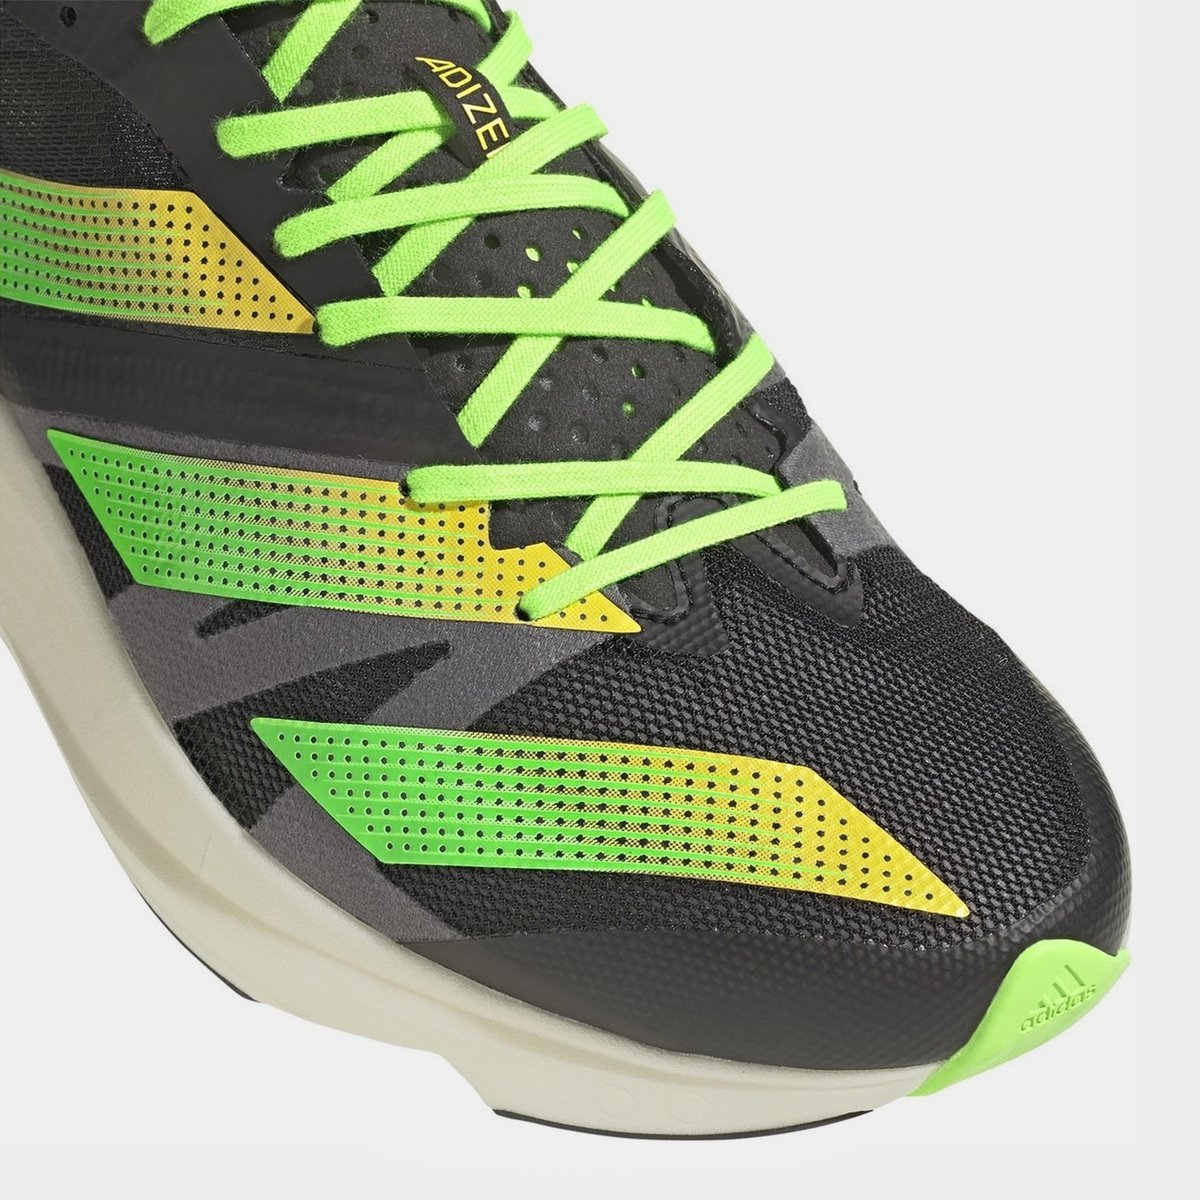 adidas Adizero Takumi Sen 8 Men's Running Shoes Black/Green, £85.00